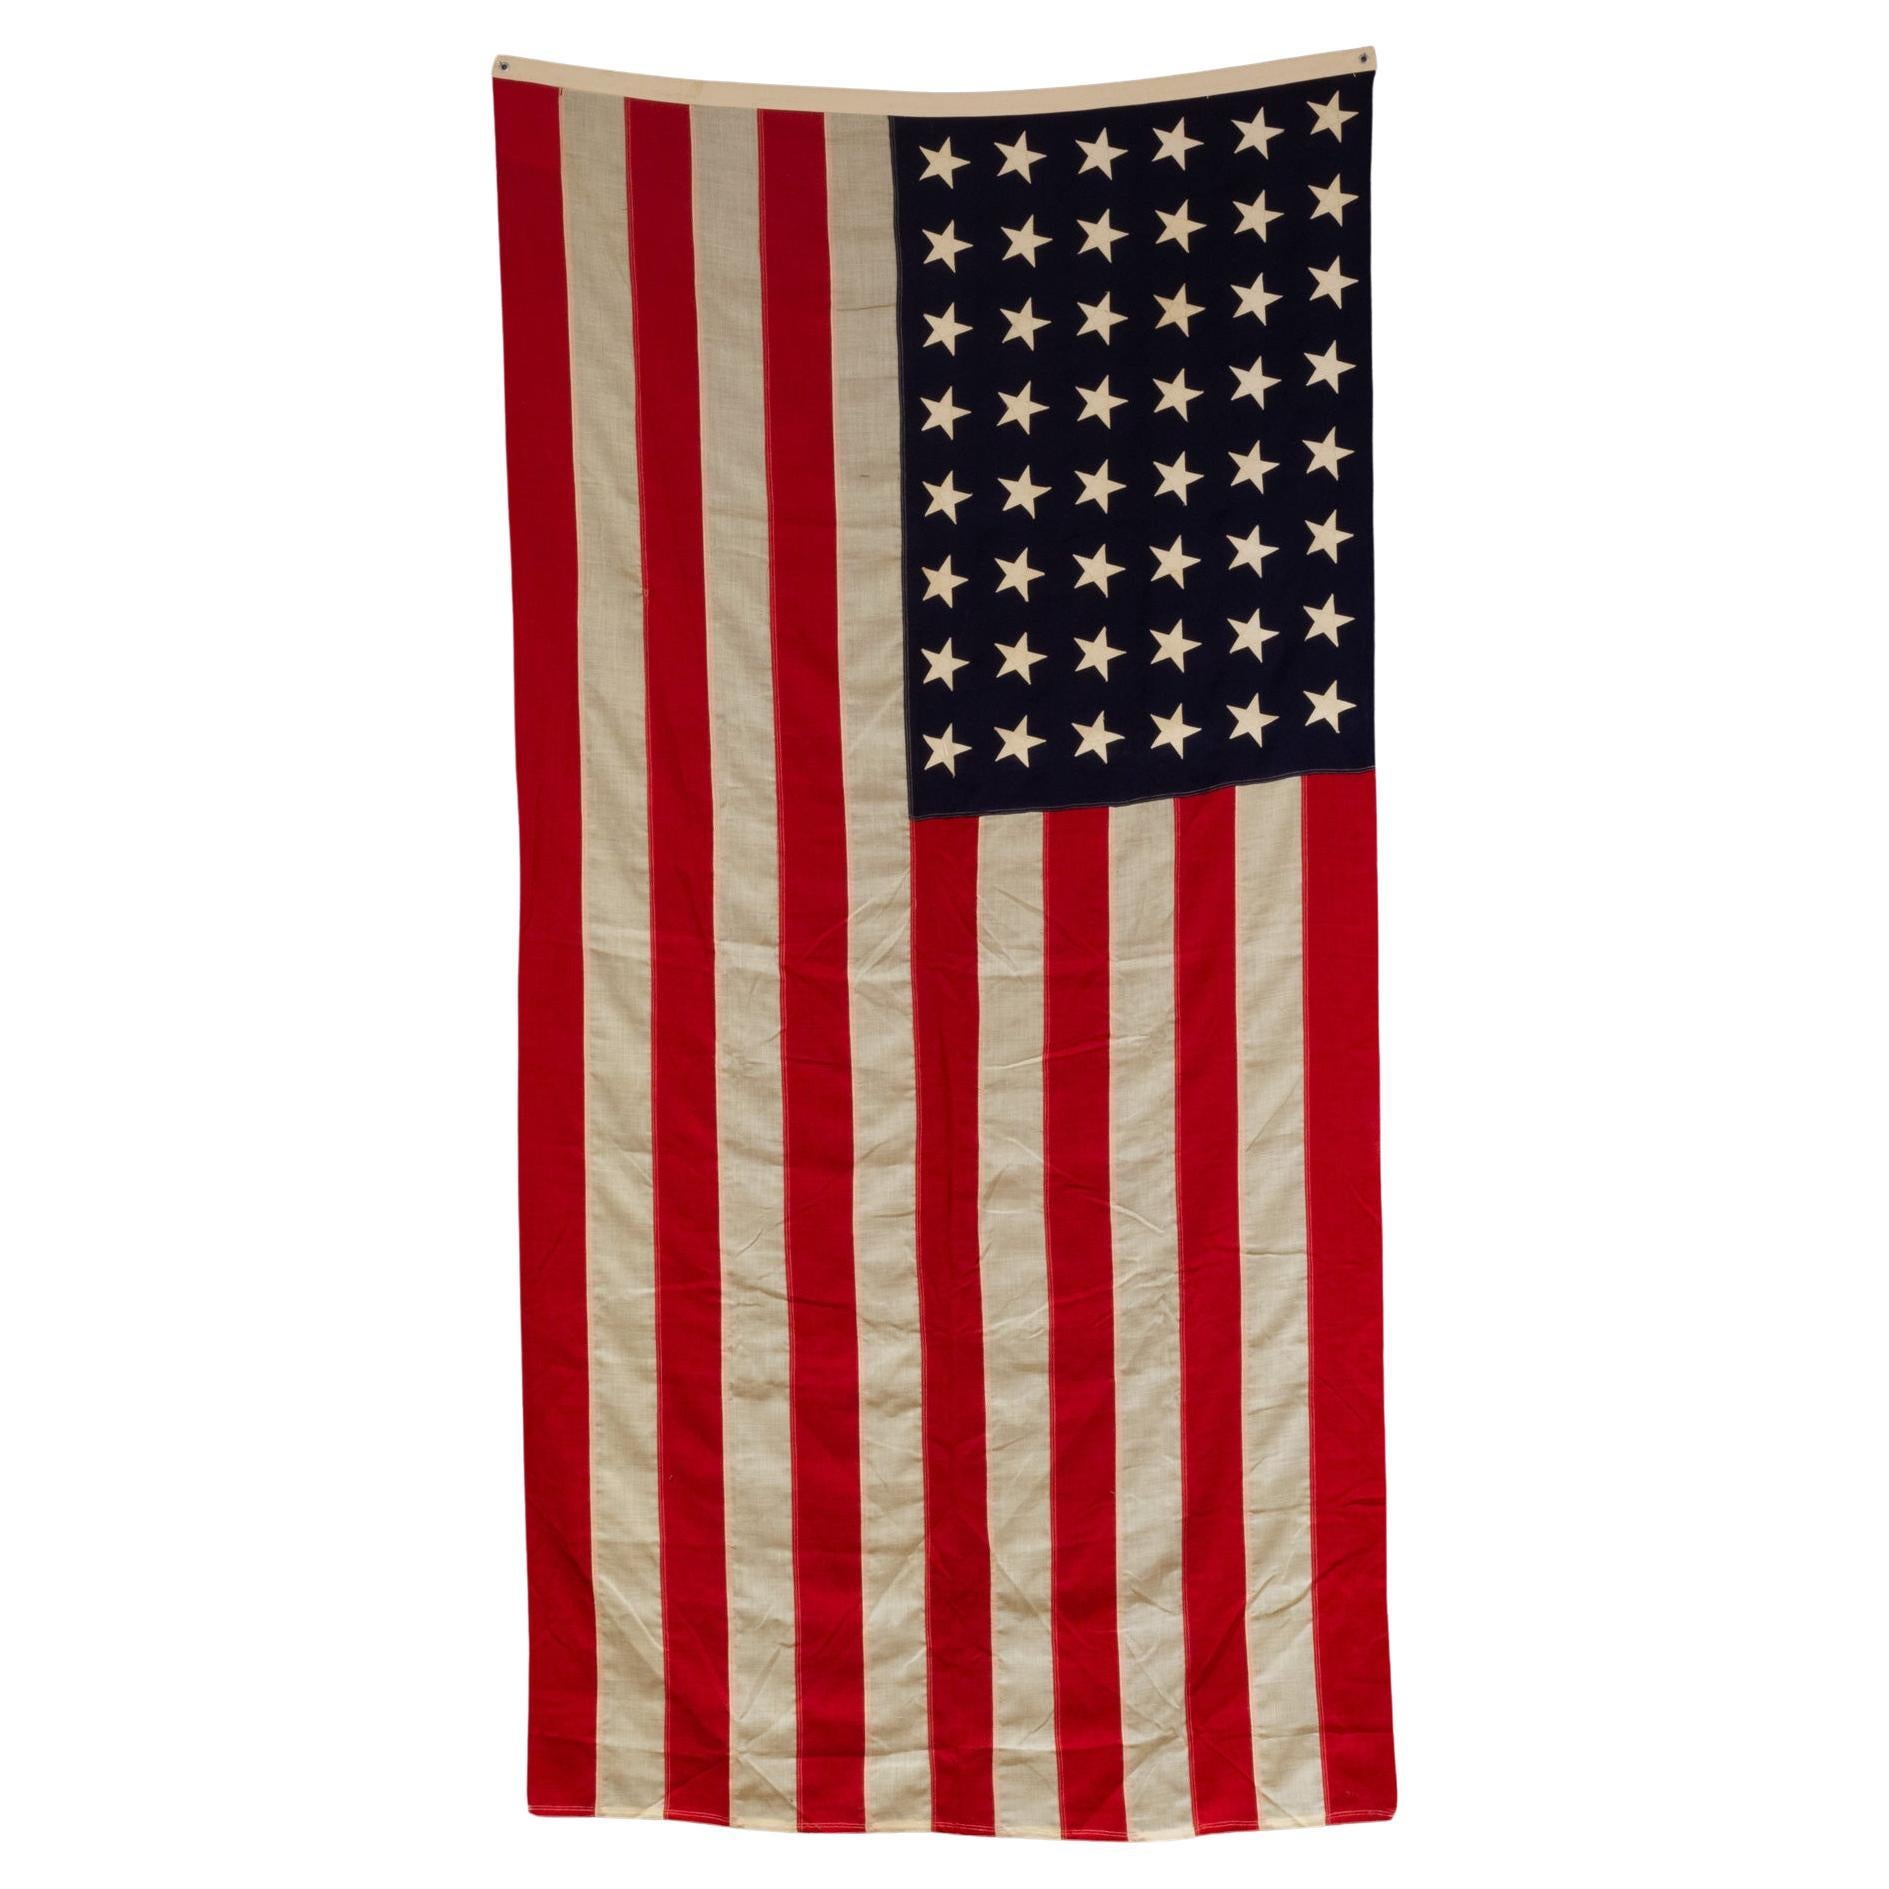 Große amerikanische Vintage-Vintage-Wollflagge mit 48 Sternen, ca. 1940-1950, kostenloser Versand im Angebot